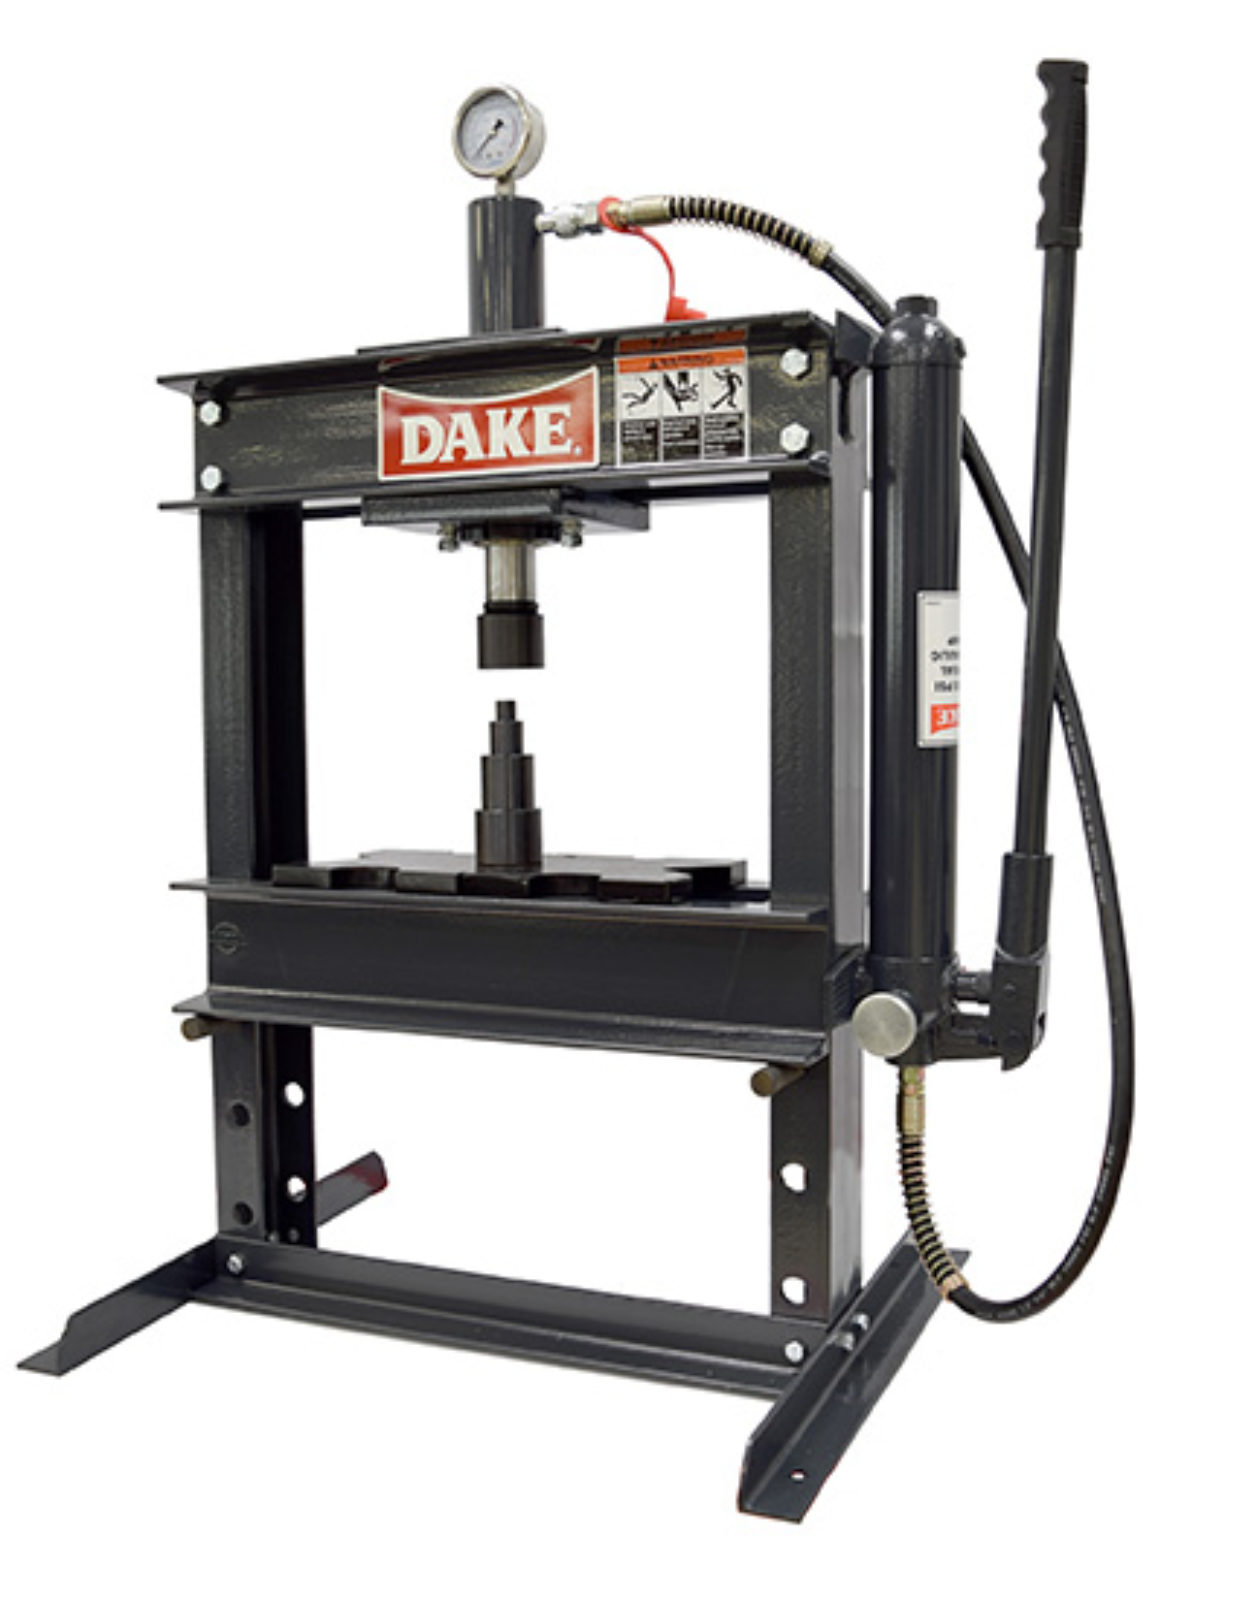 Dake B-10 Utility Press